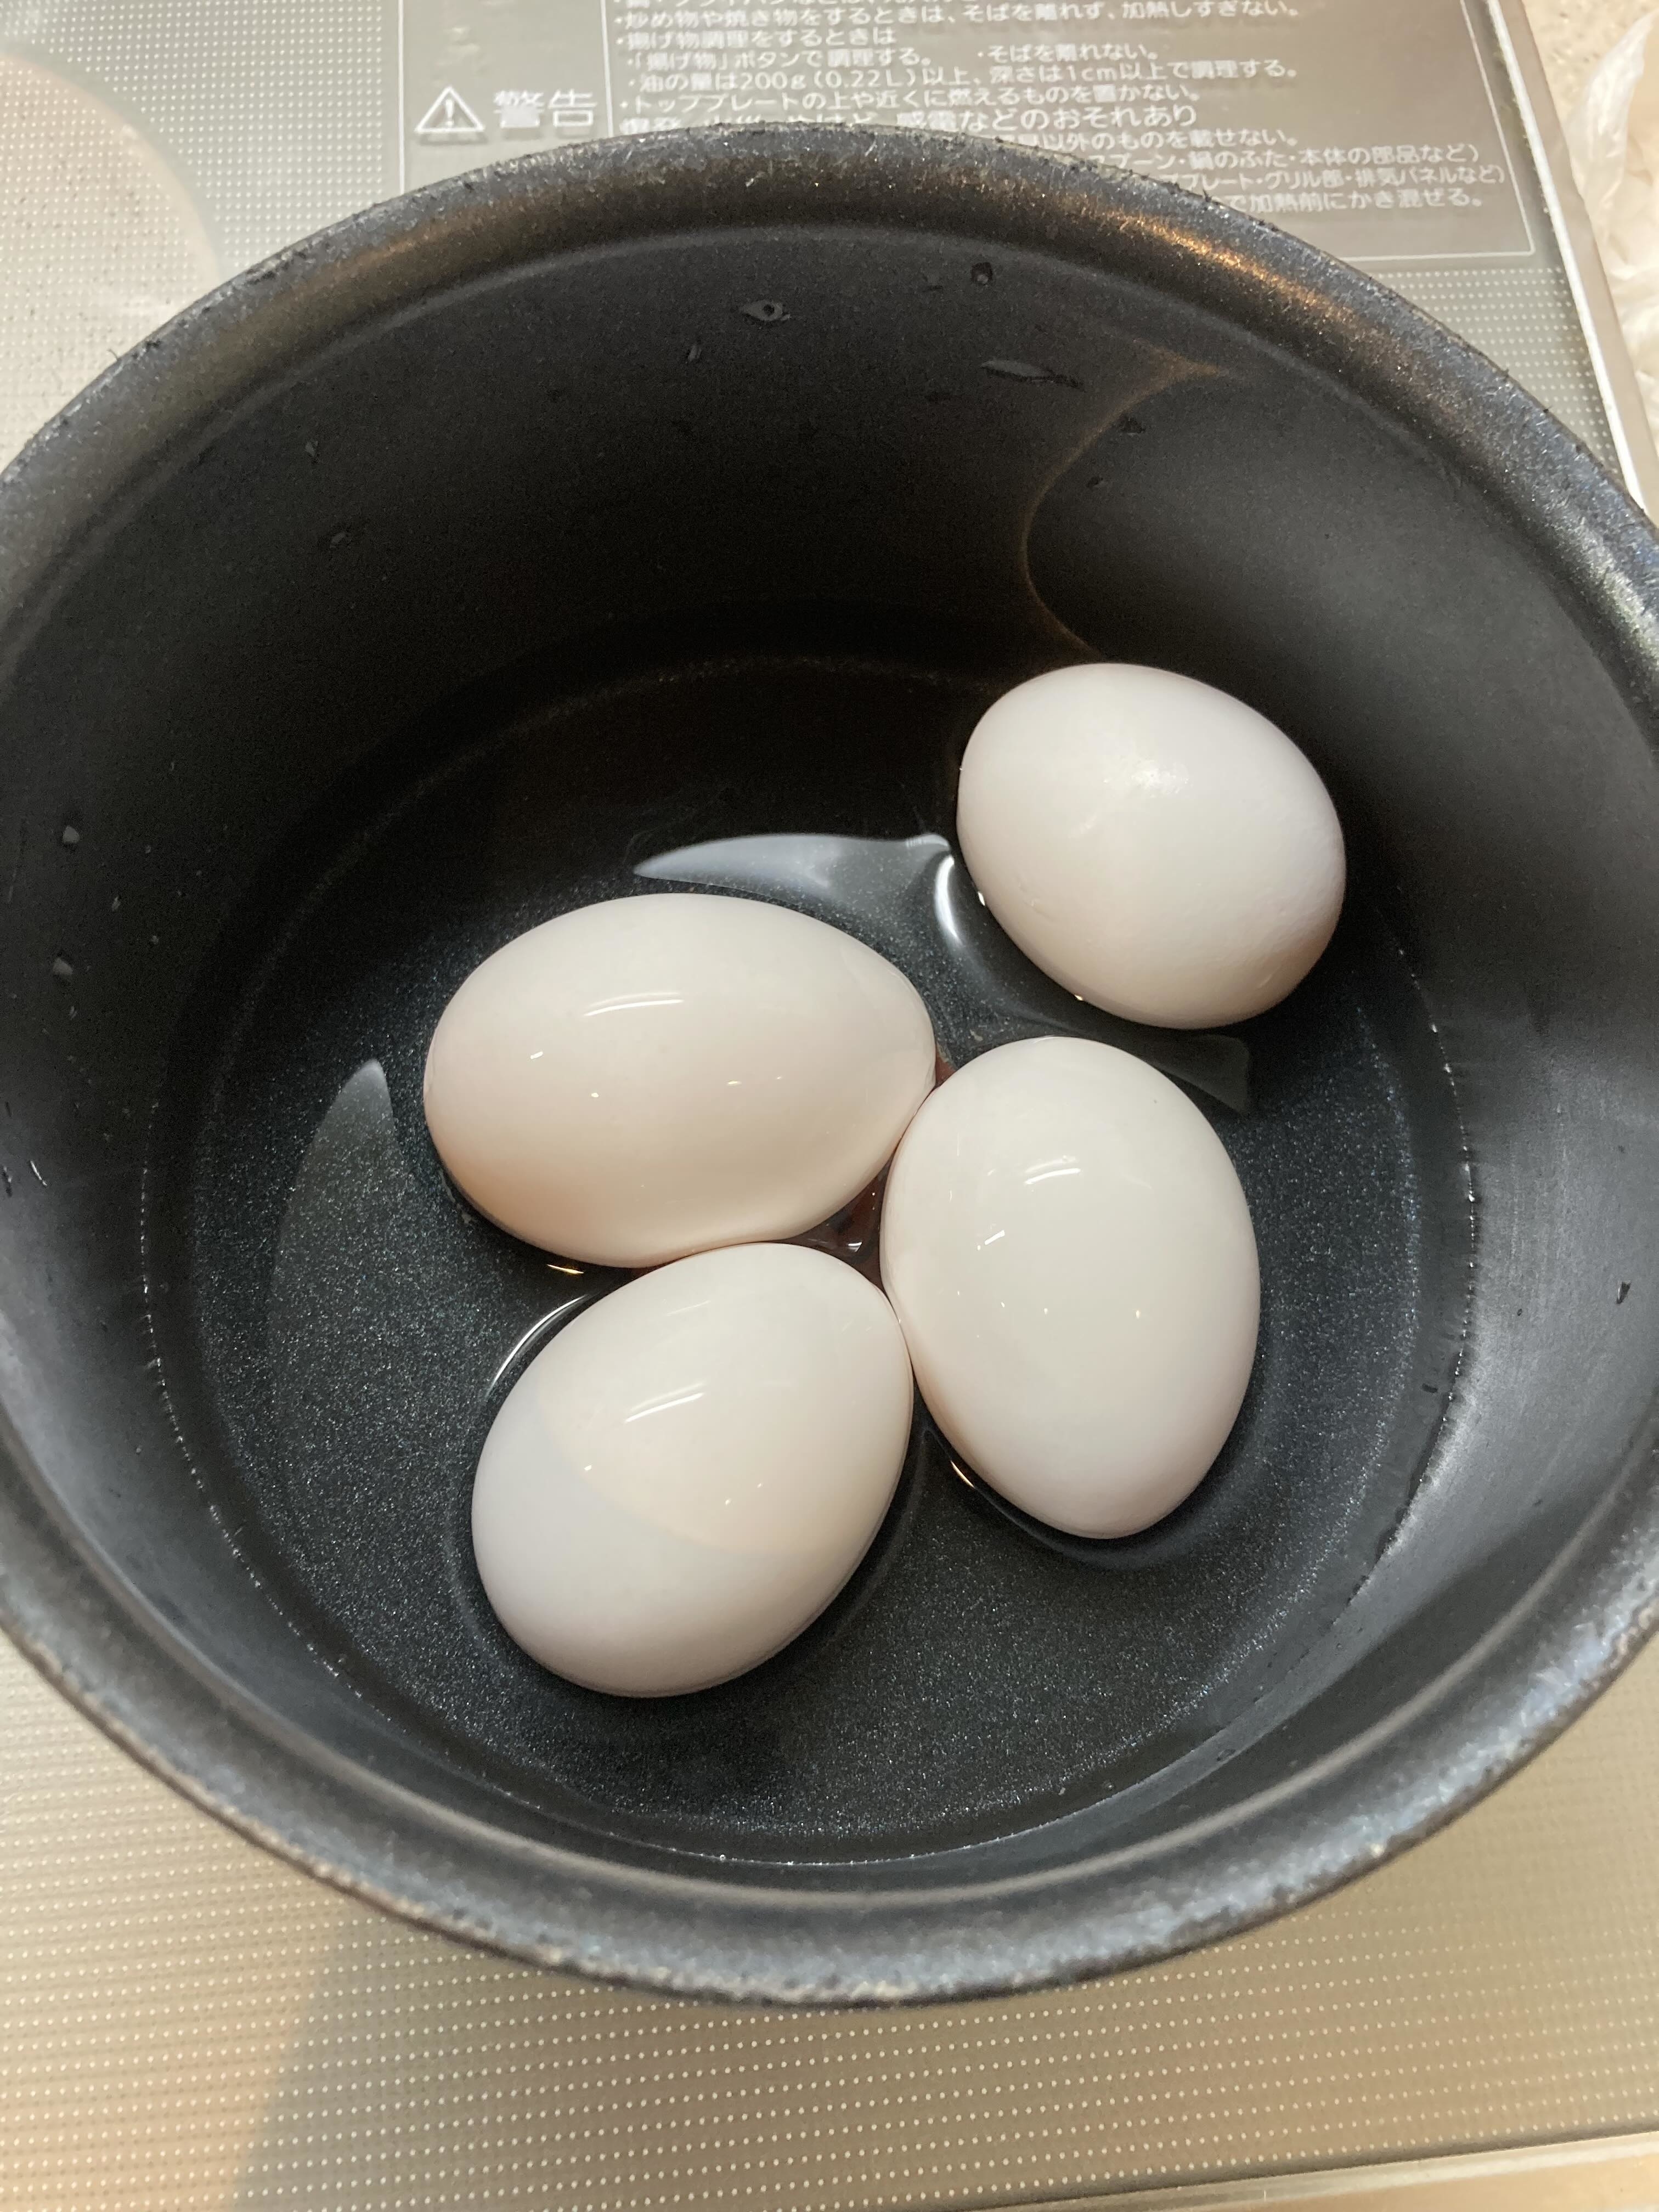 黒い鍋に入った四つの白い卵。